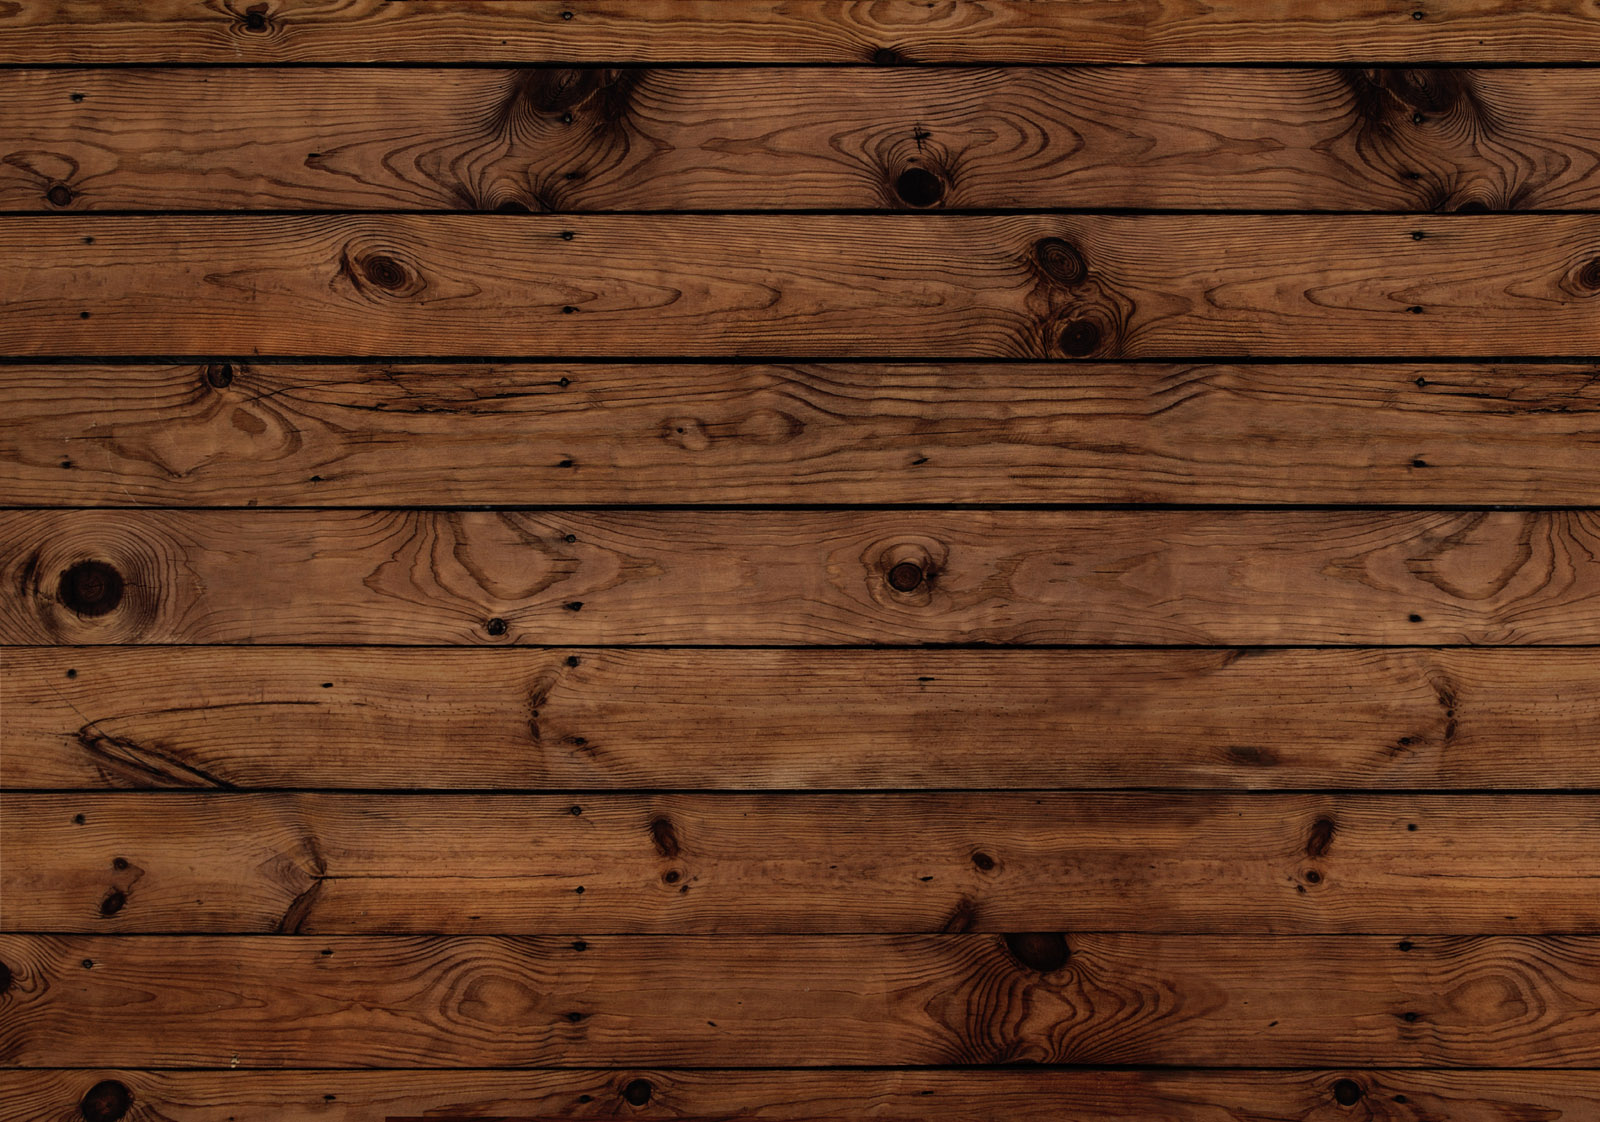 Darkwood Plank Photo Floor Prop Inspire Me Baby Store